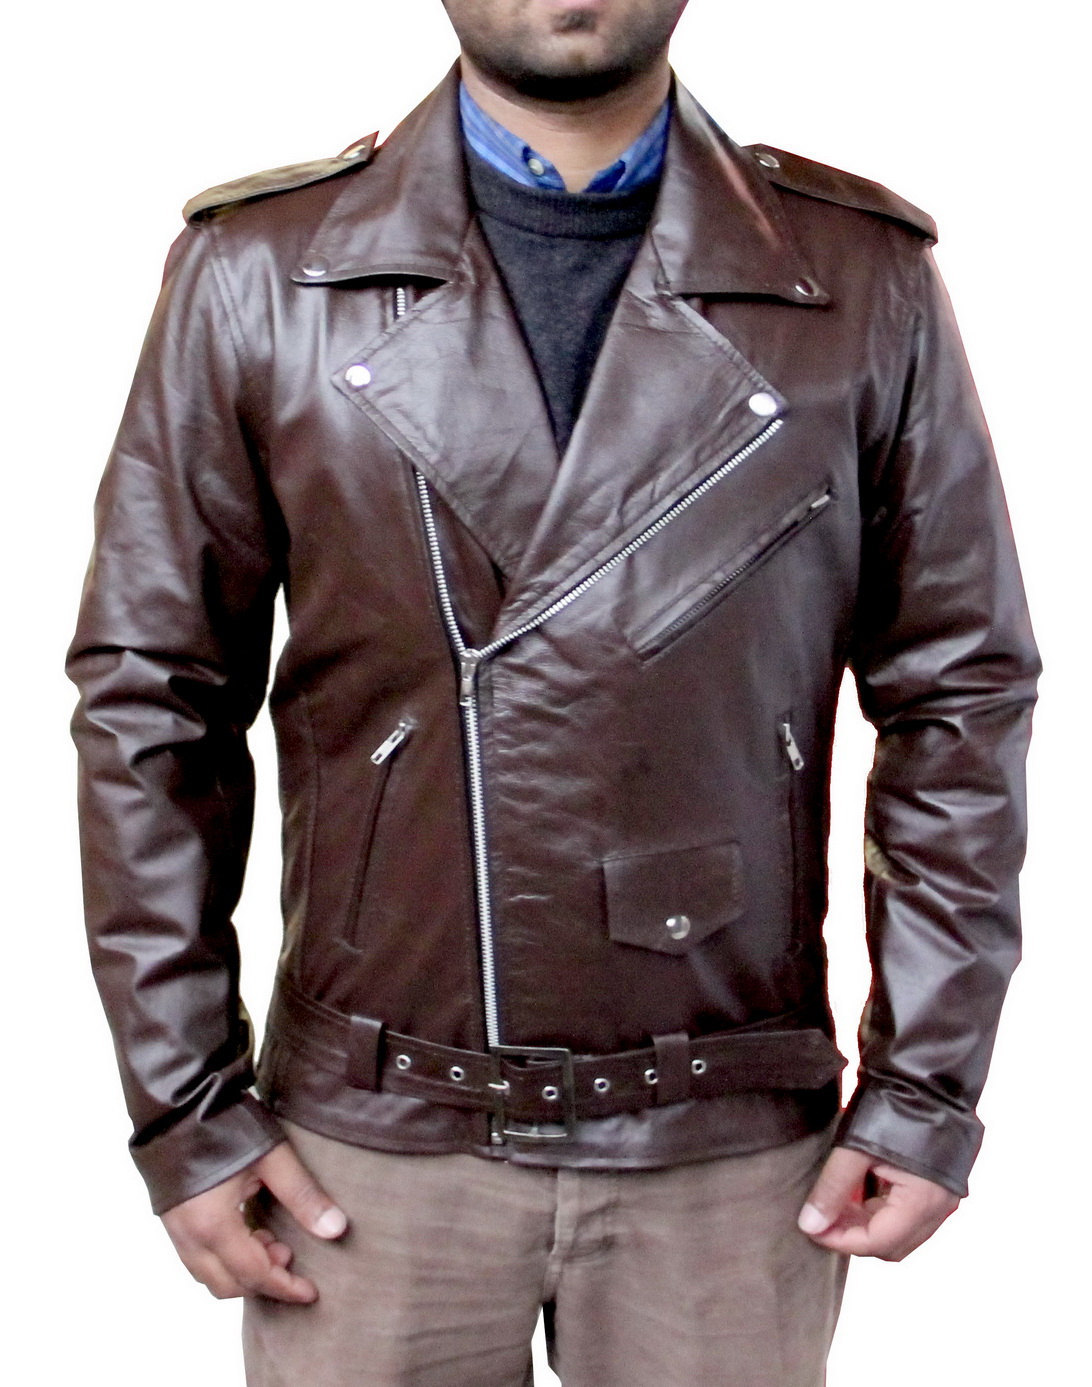 New Handmade Men Classic Brando Style Leather Jacket, Leather jacket ...